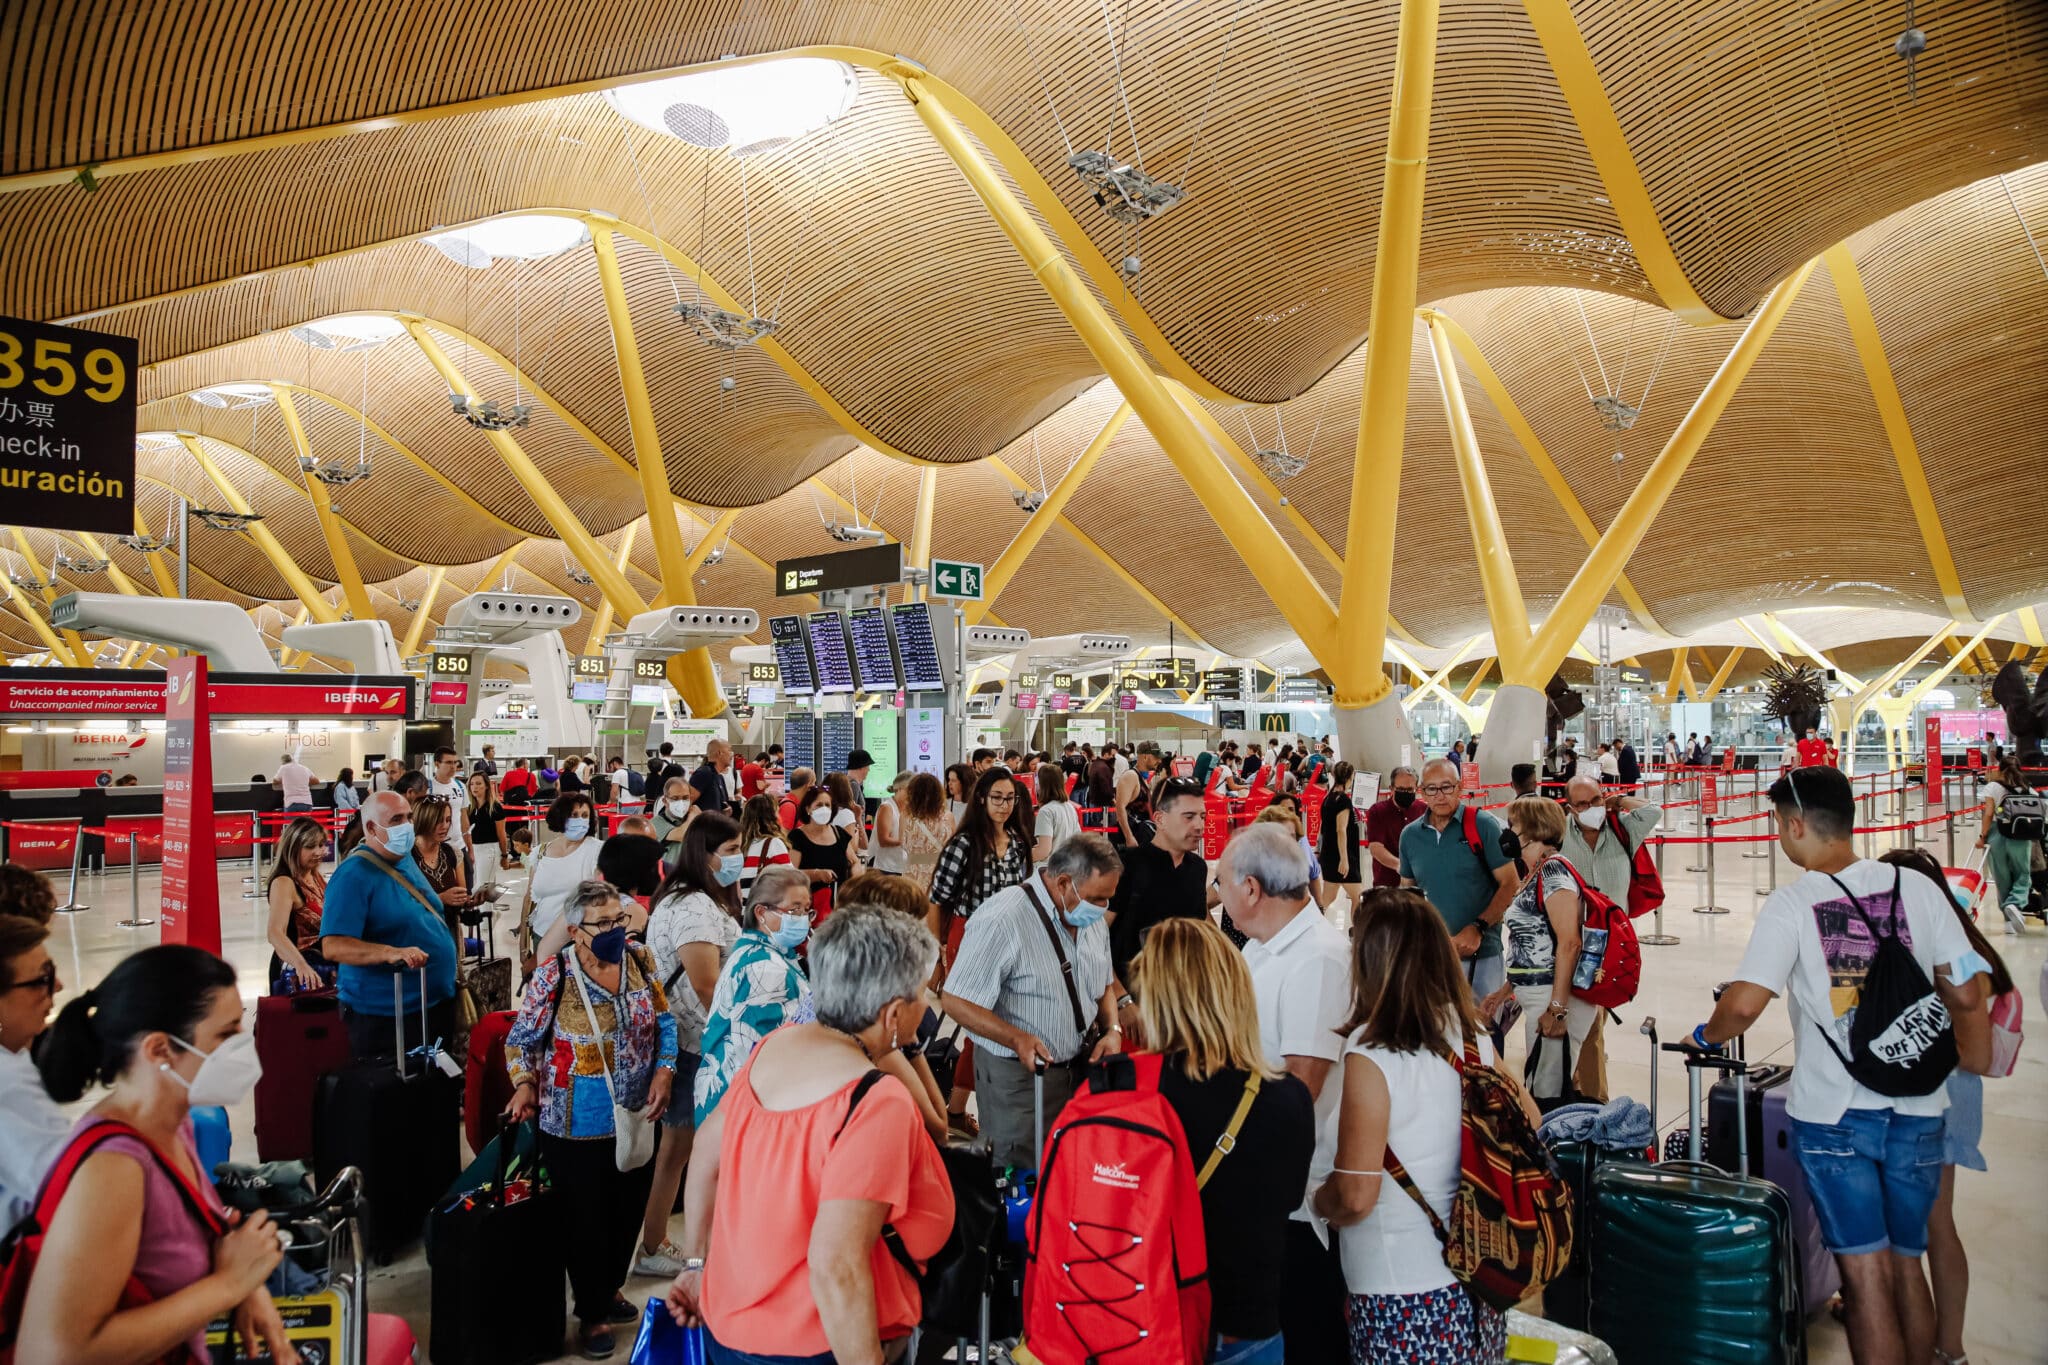 Pasajeros con sus maletas en la Terminal 4 del Aeropuerto Adolfo Suárez Madrid Barajas